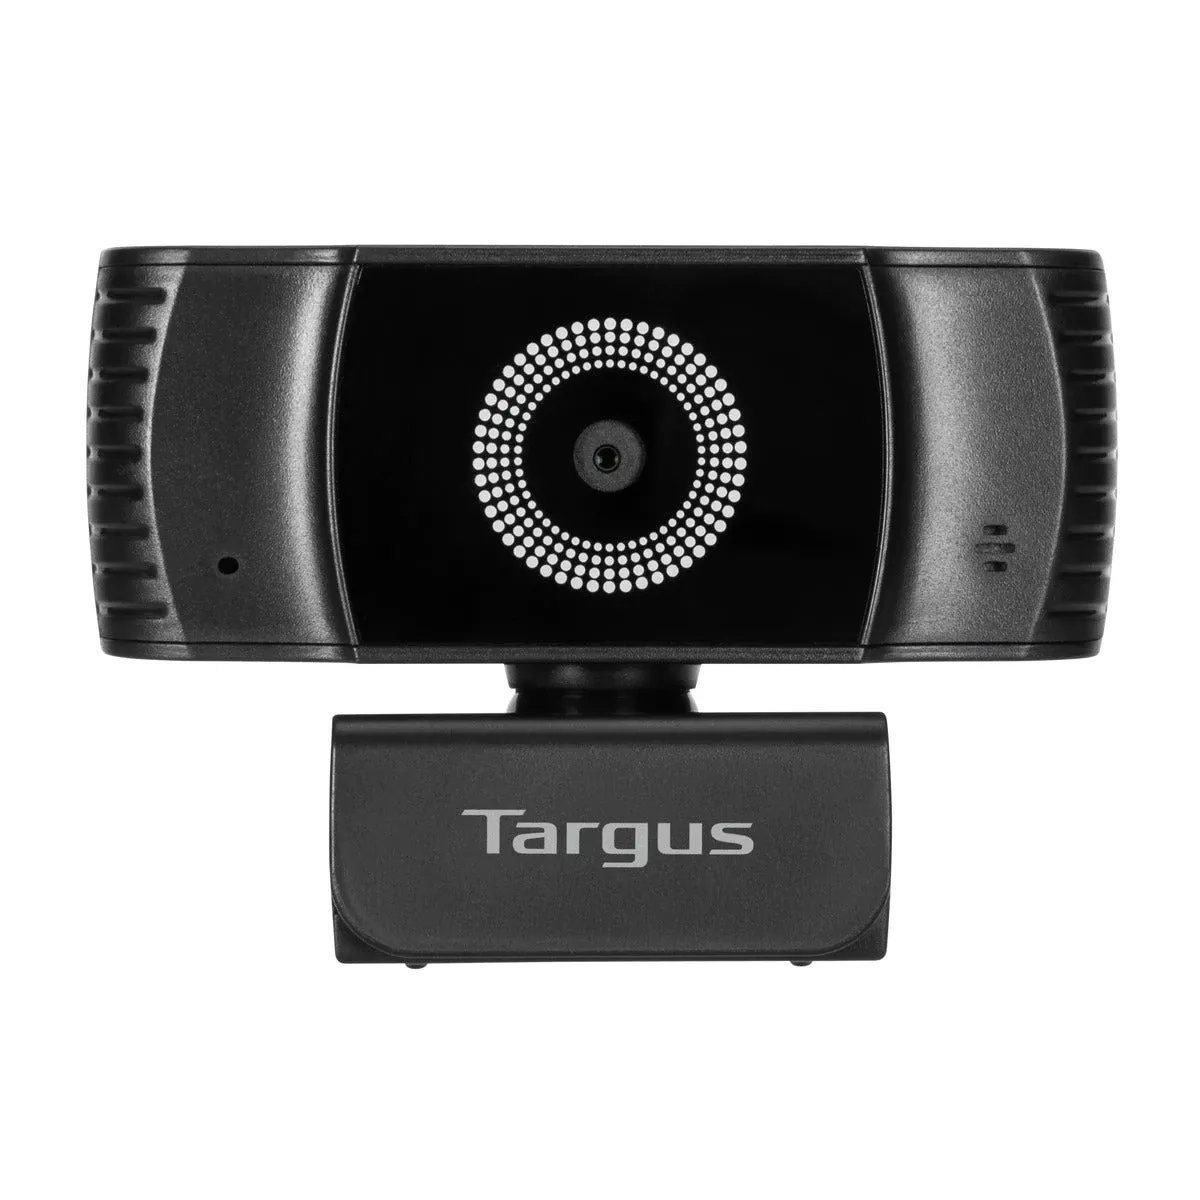 Vente TARGUS Webcam Plus Full HD 1080p Webcam with Auto au meilleur prix